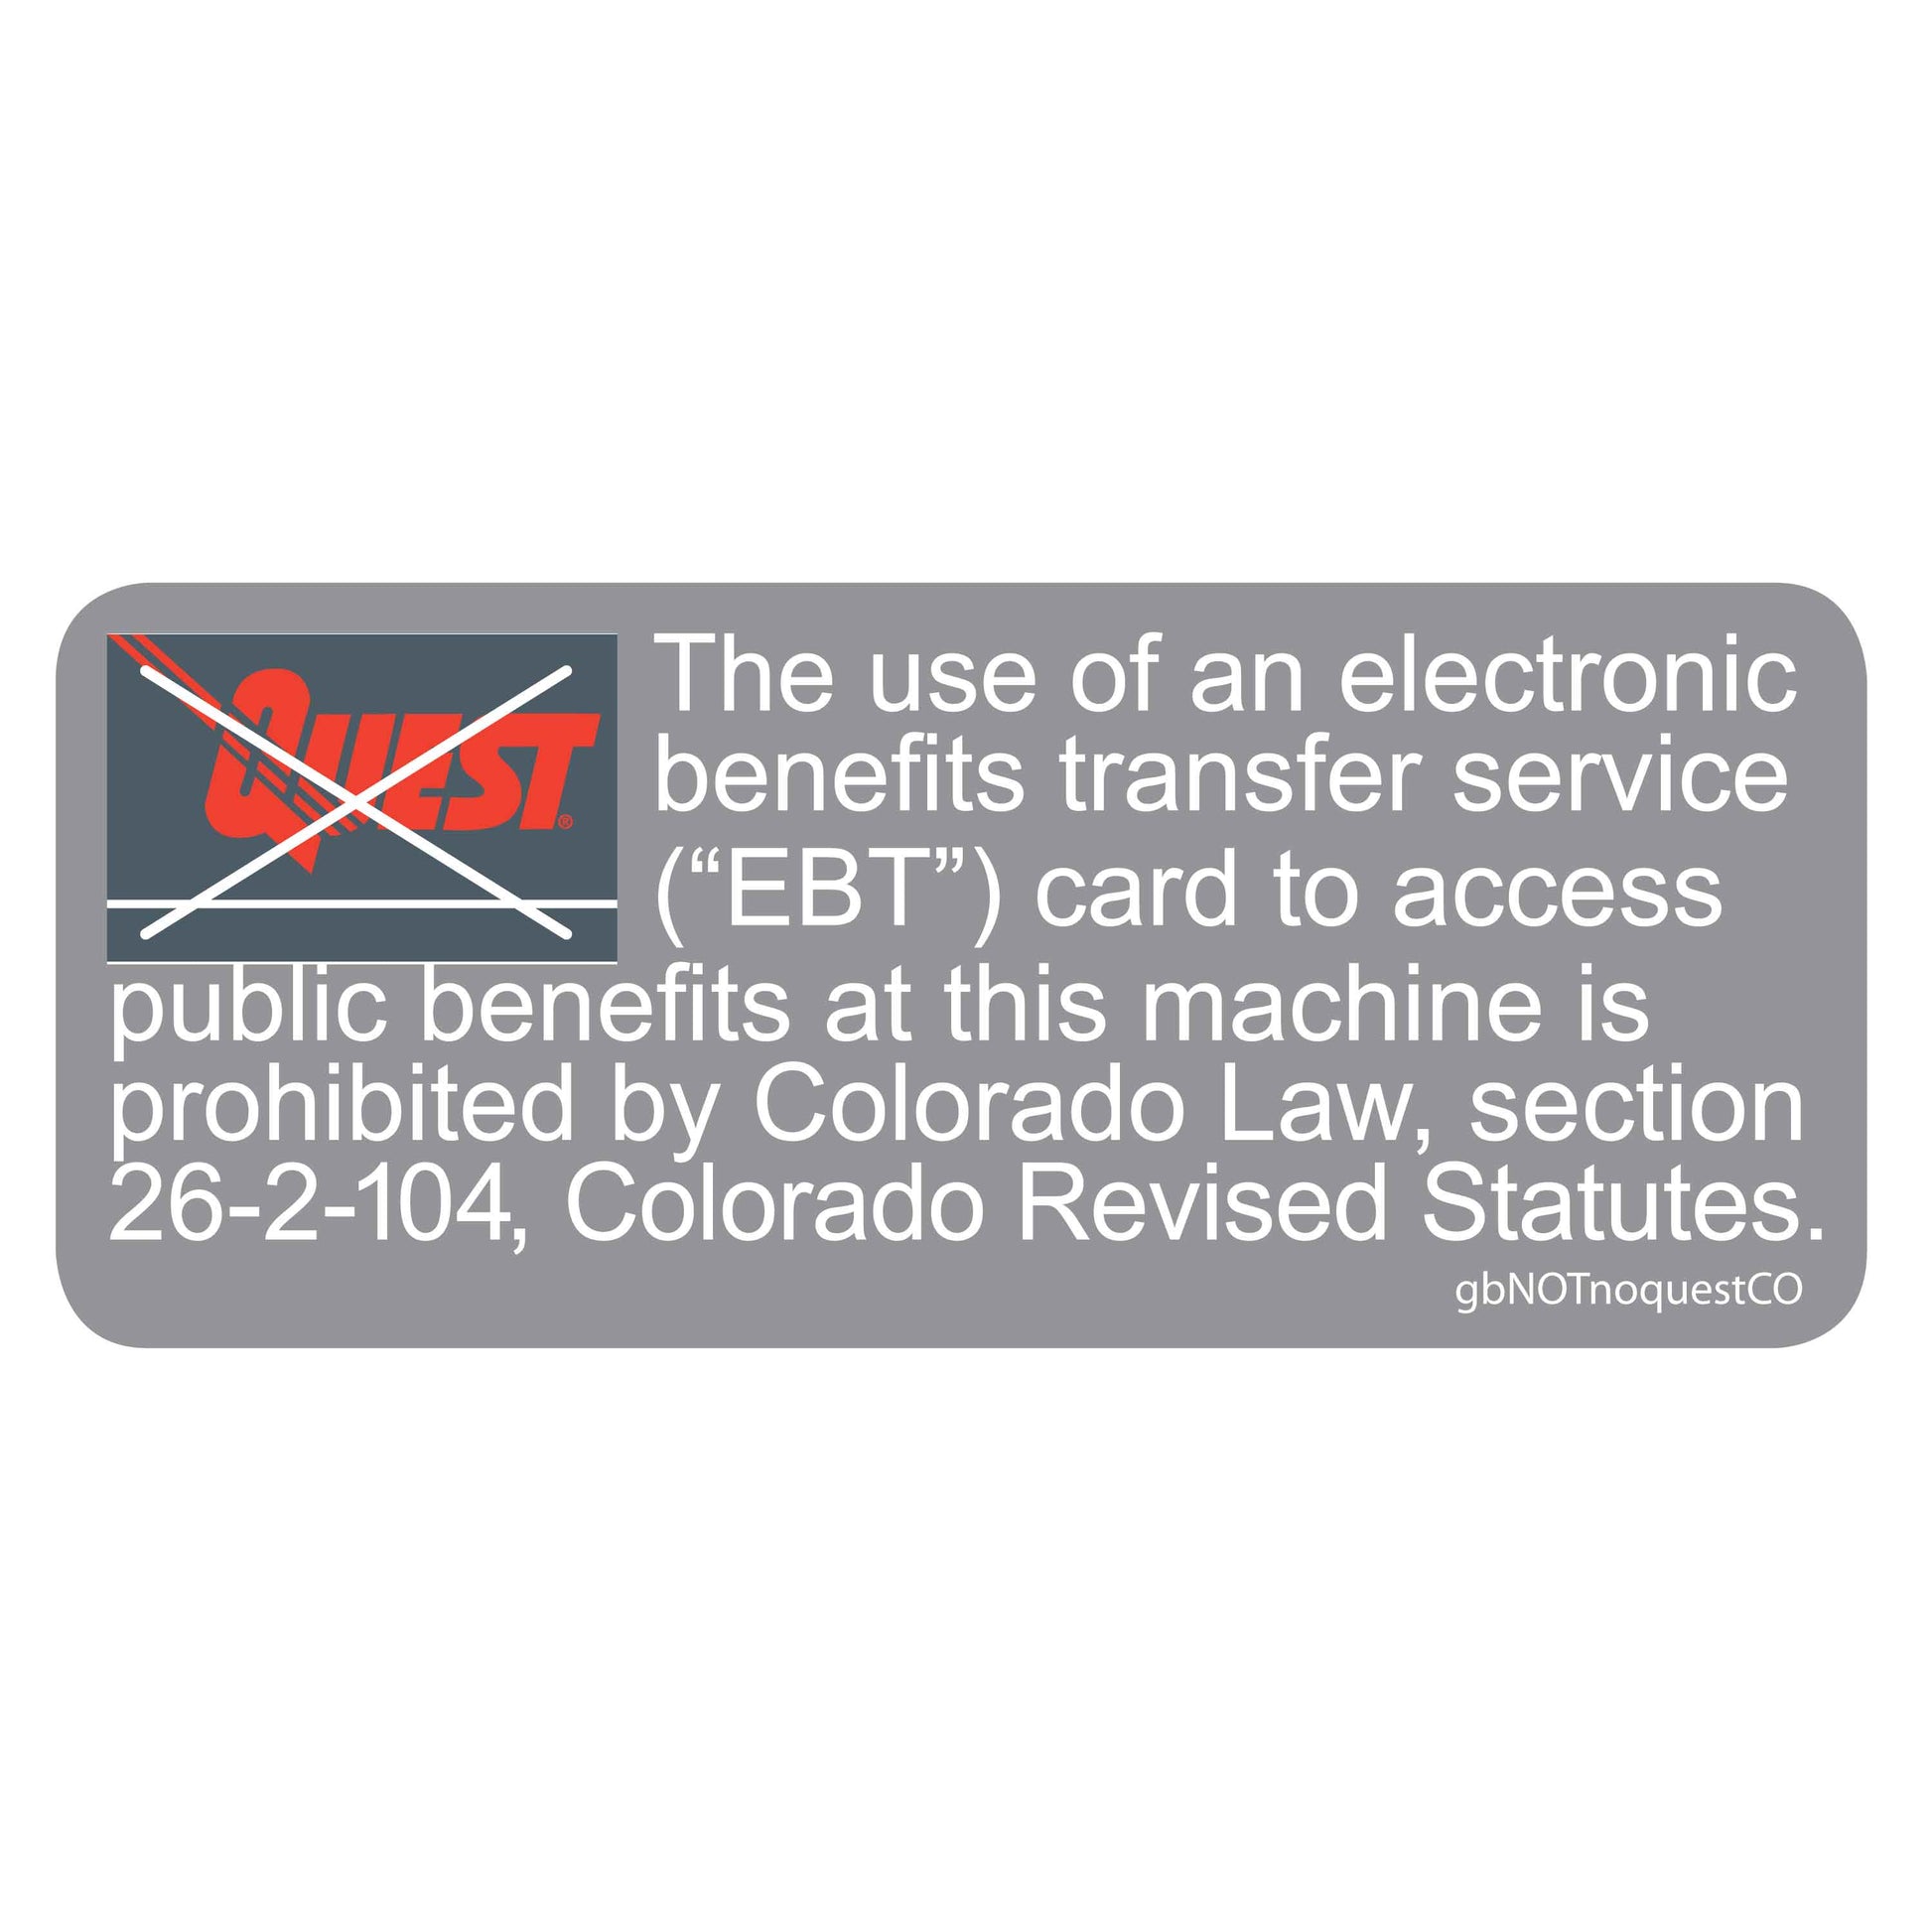 Colorado Quest Card (EBT)